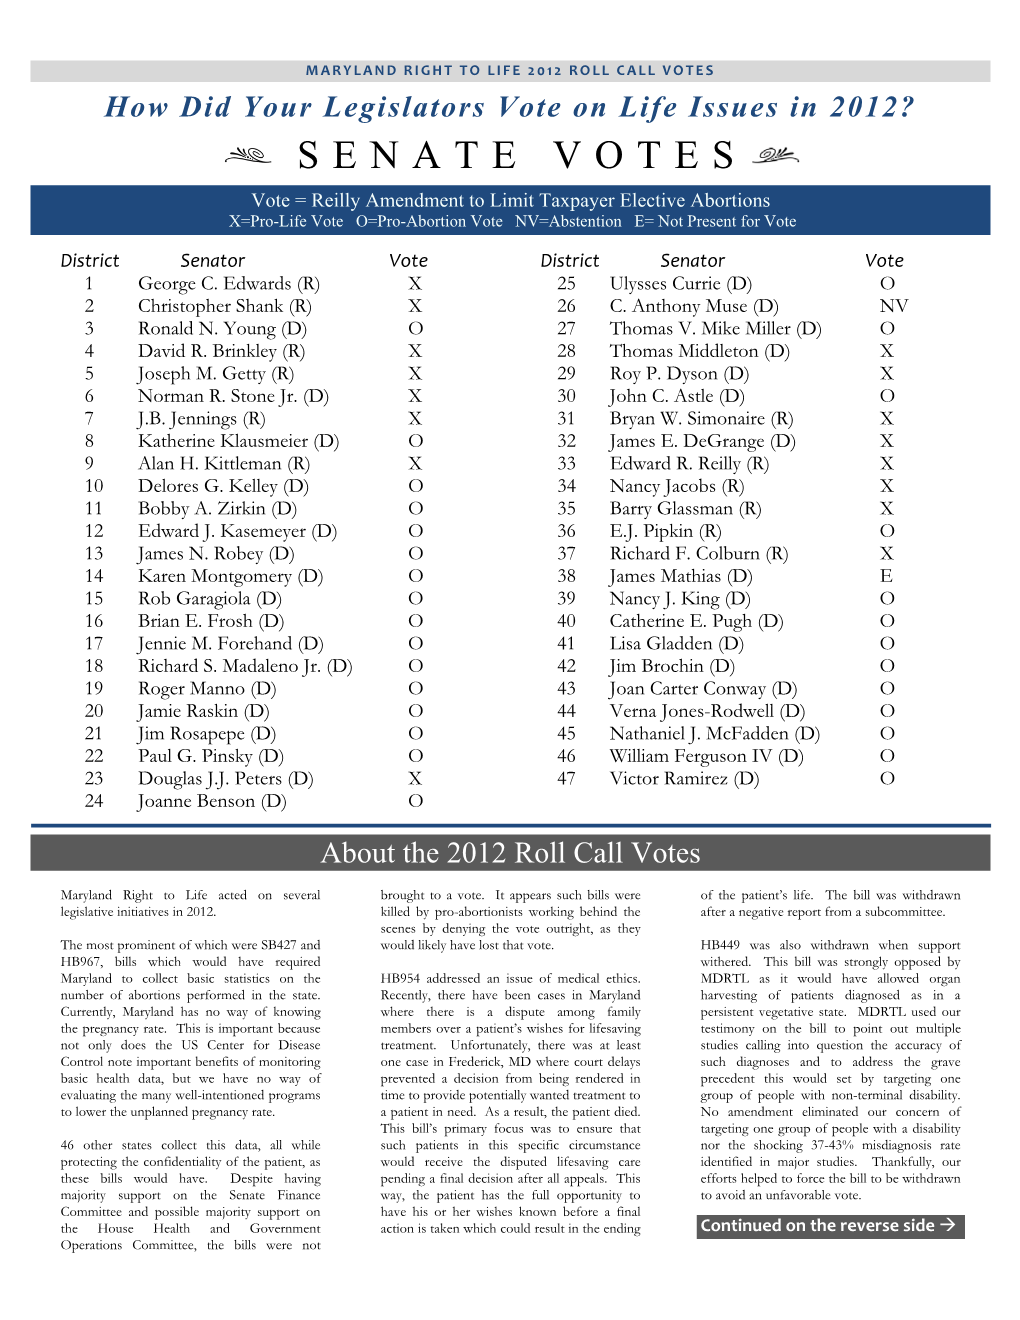 Senate Votes